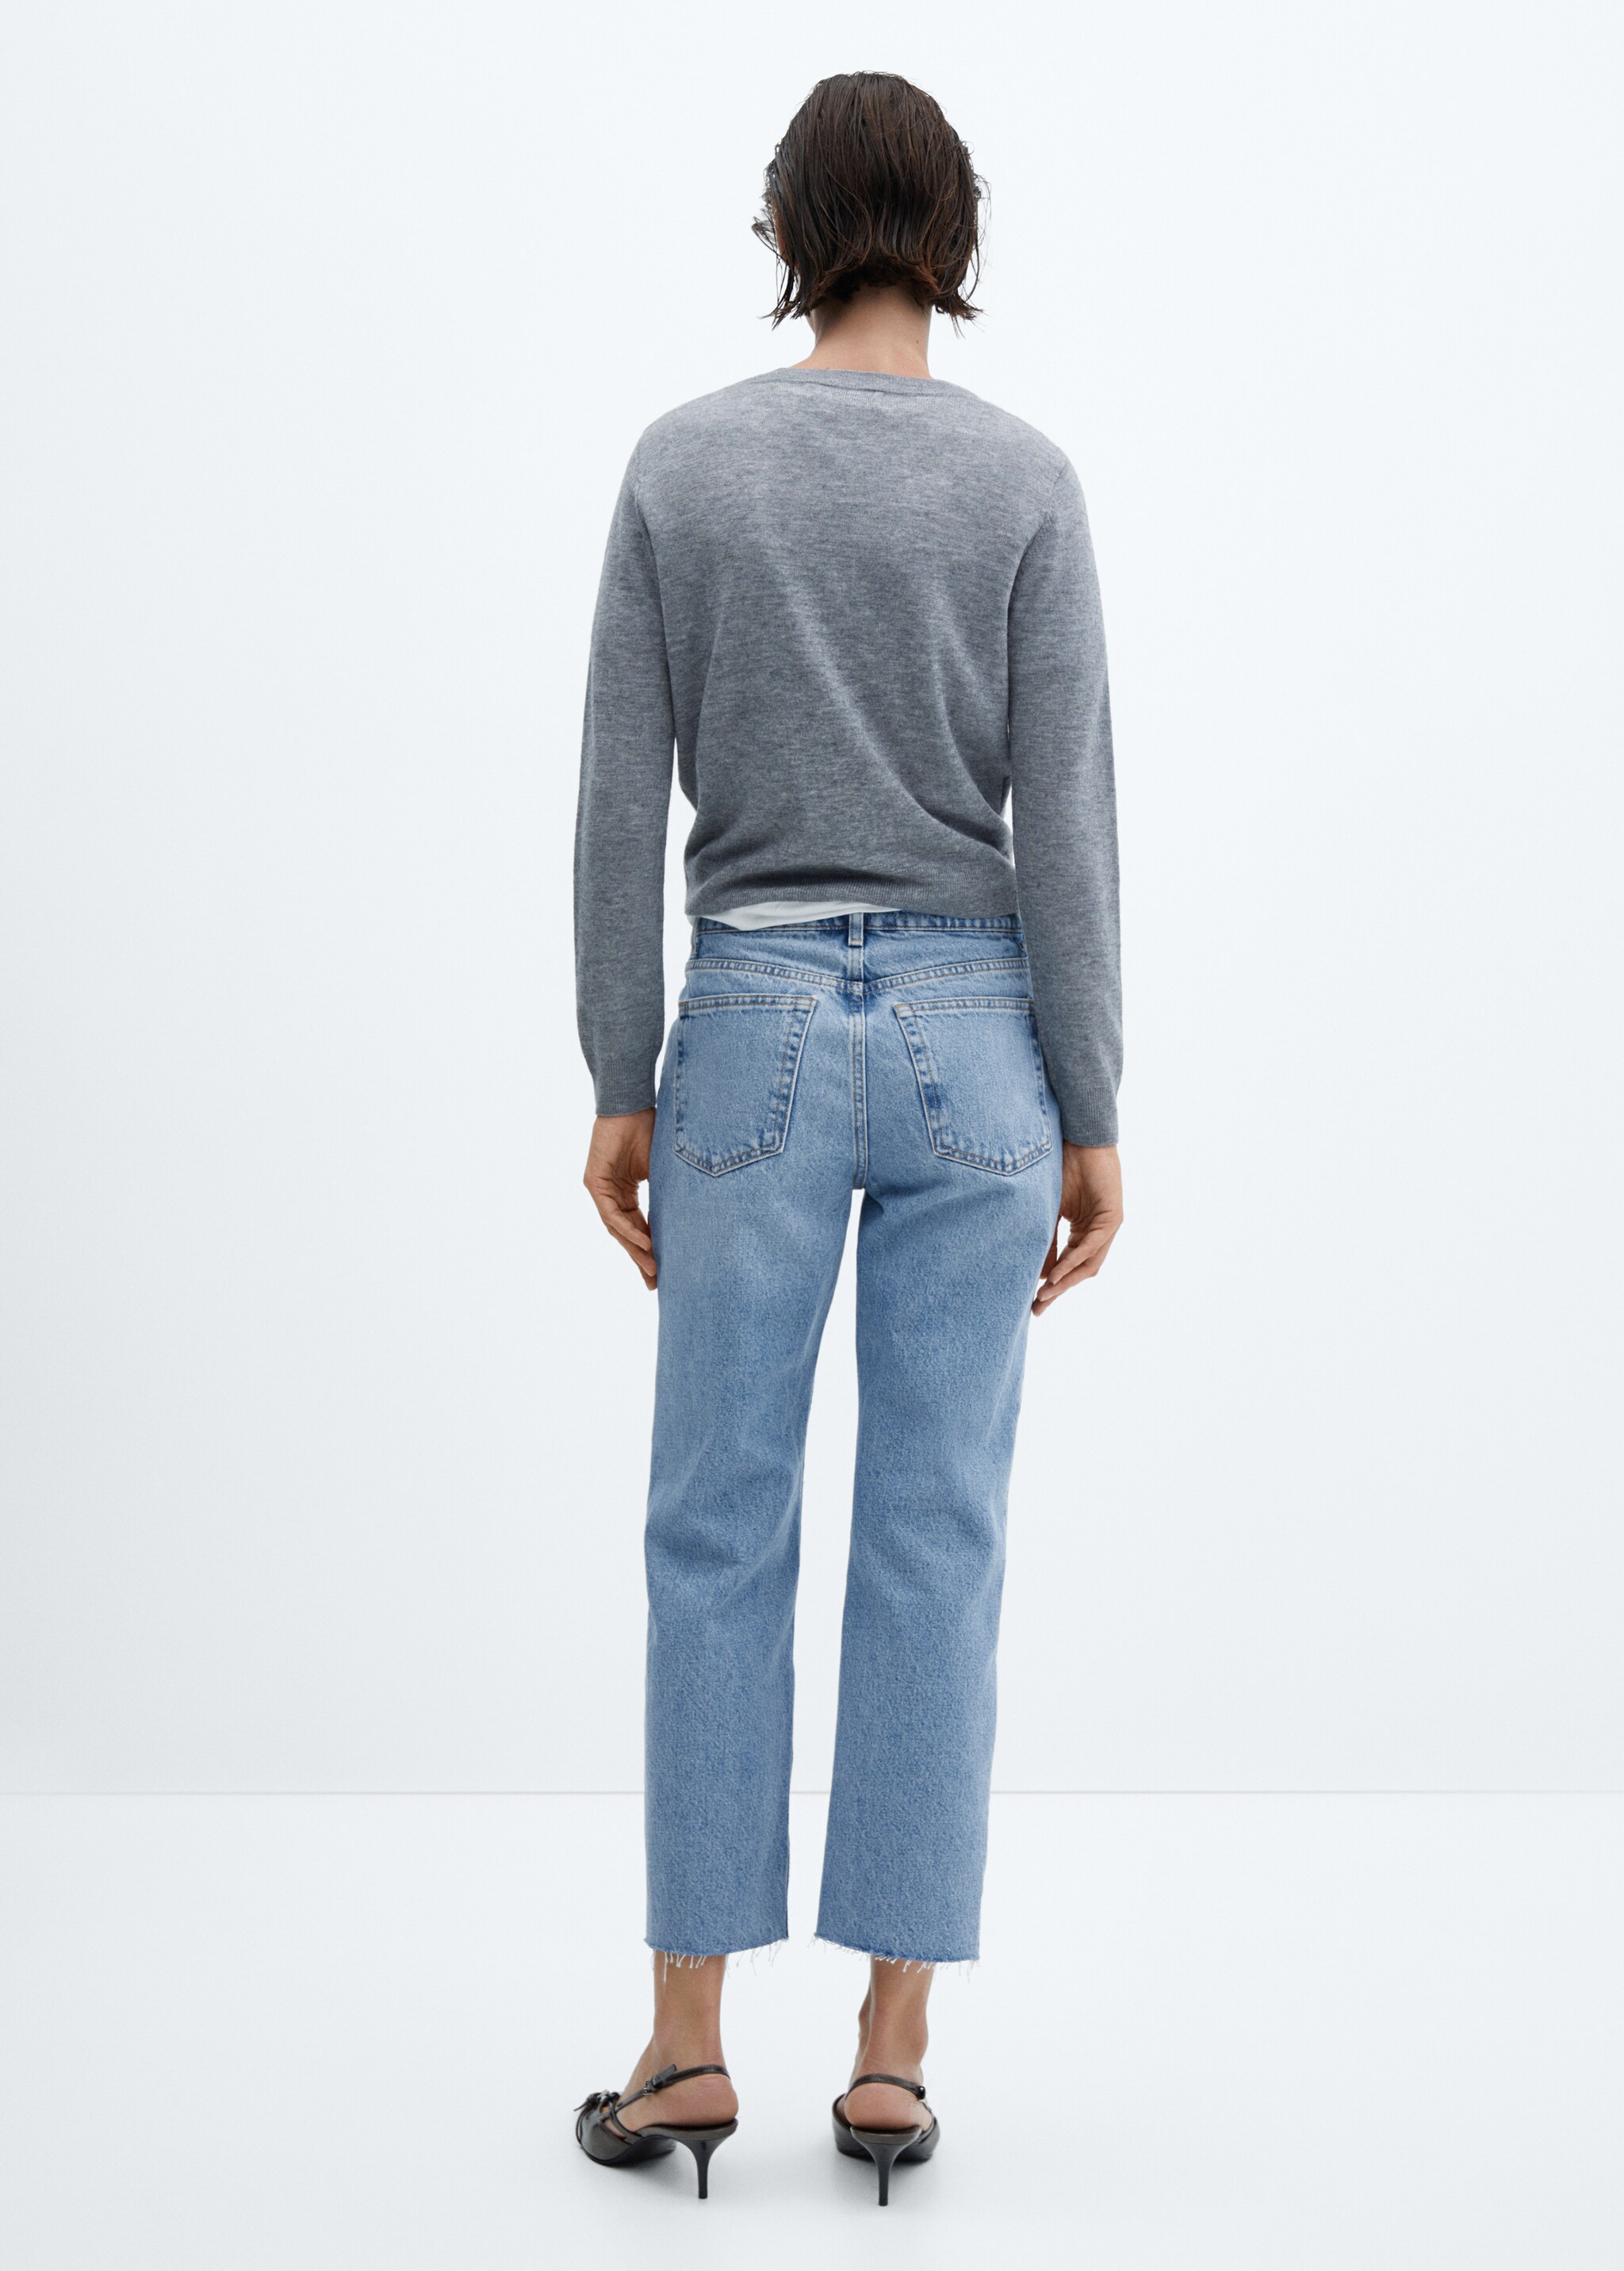 Gerade Jeans mit hohem Bund - Rückseite des Artikels